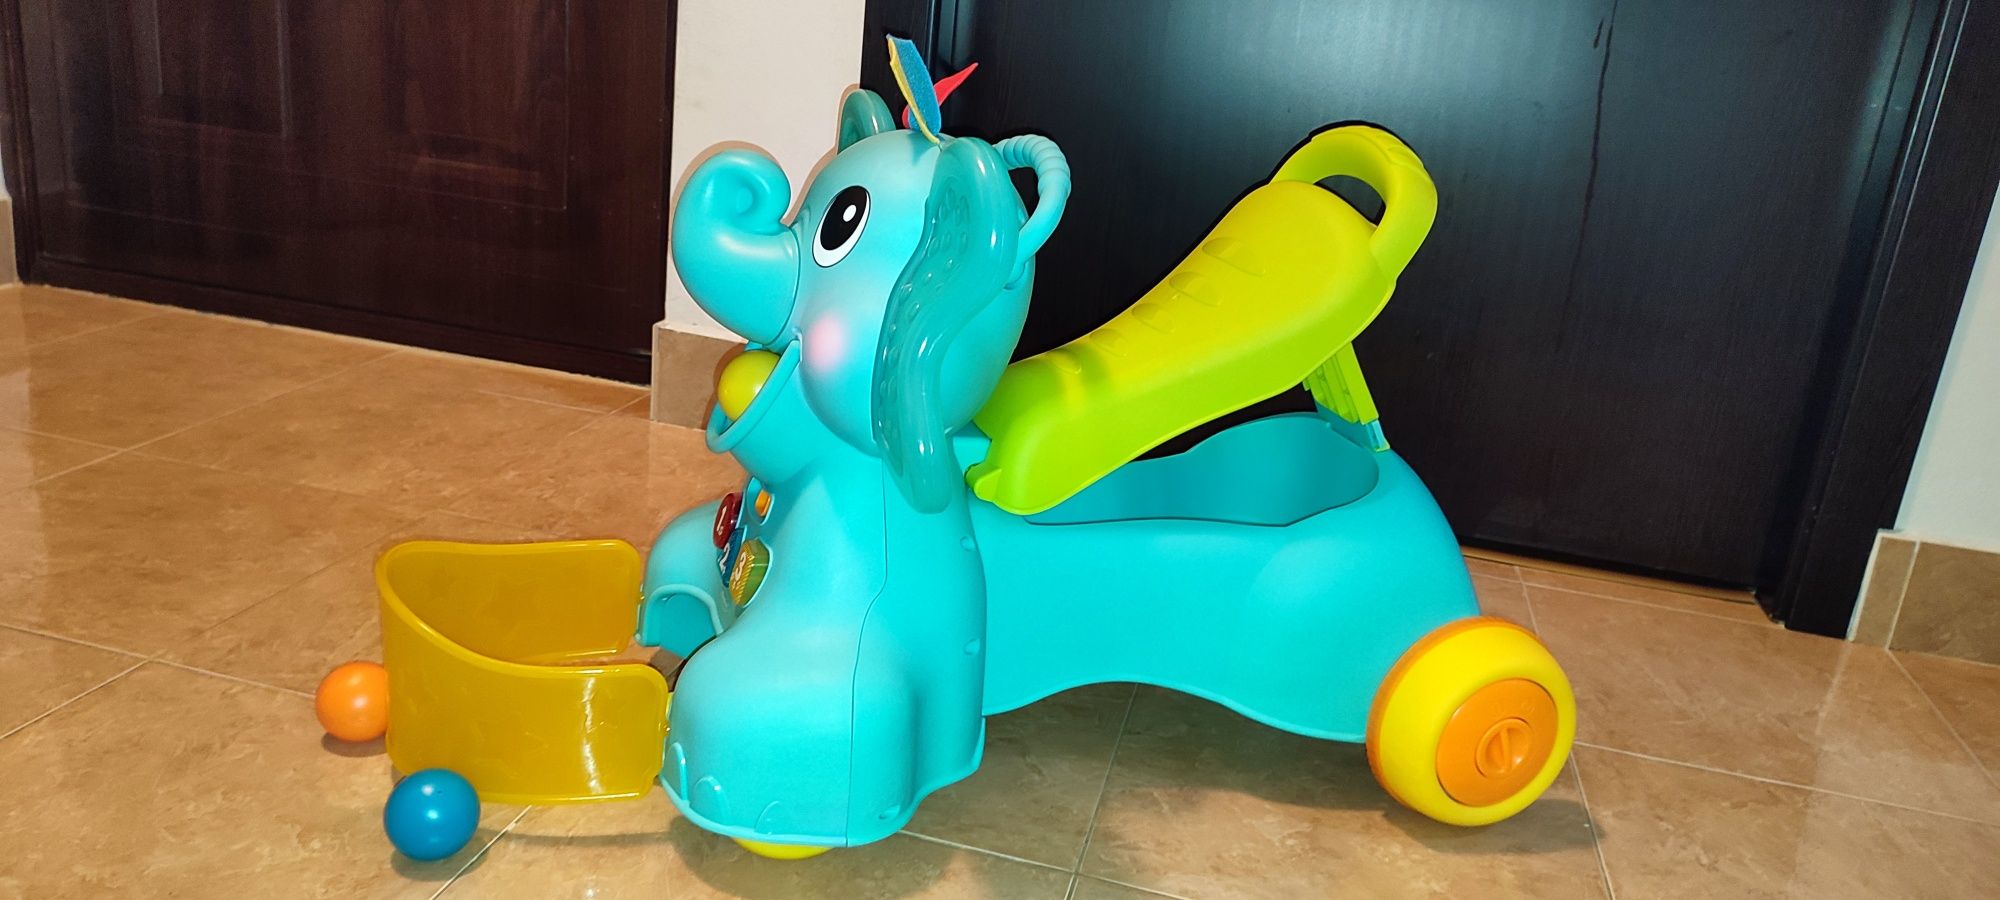 Masinuta fara pedale pentru copii, B Kids, elefant 3 in 1